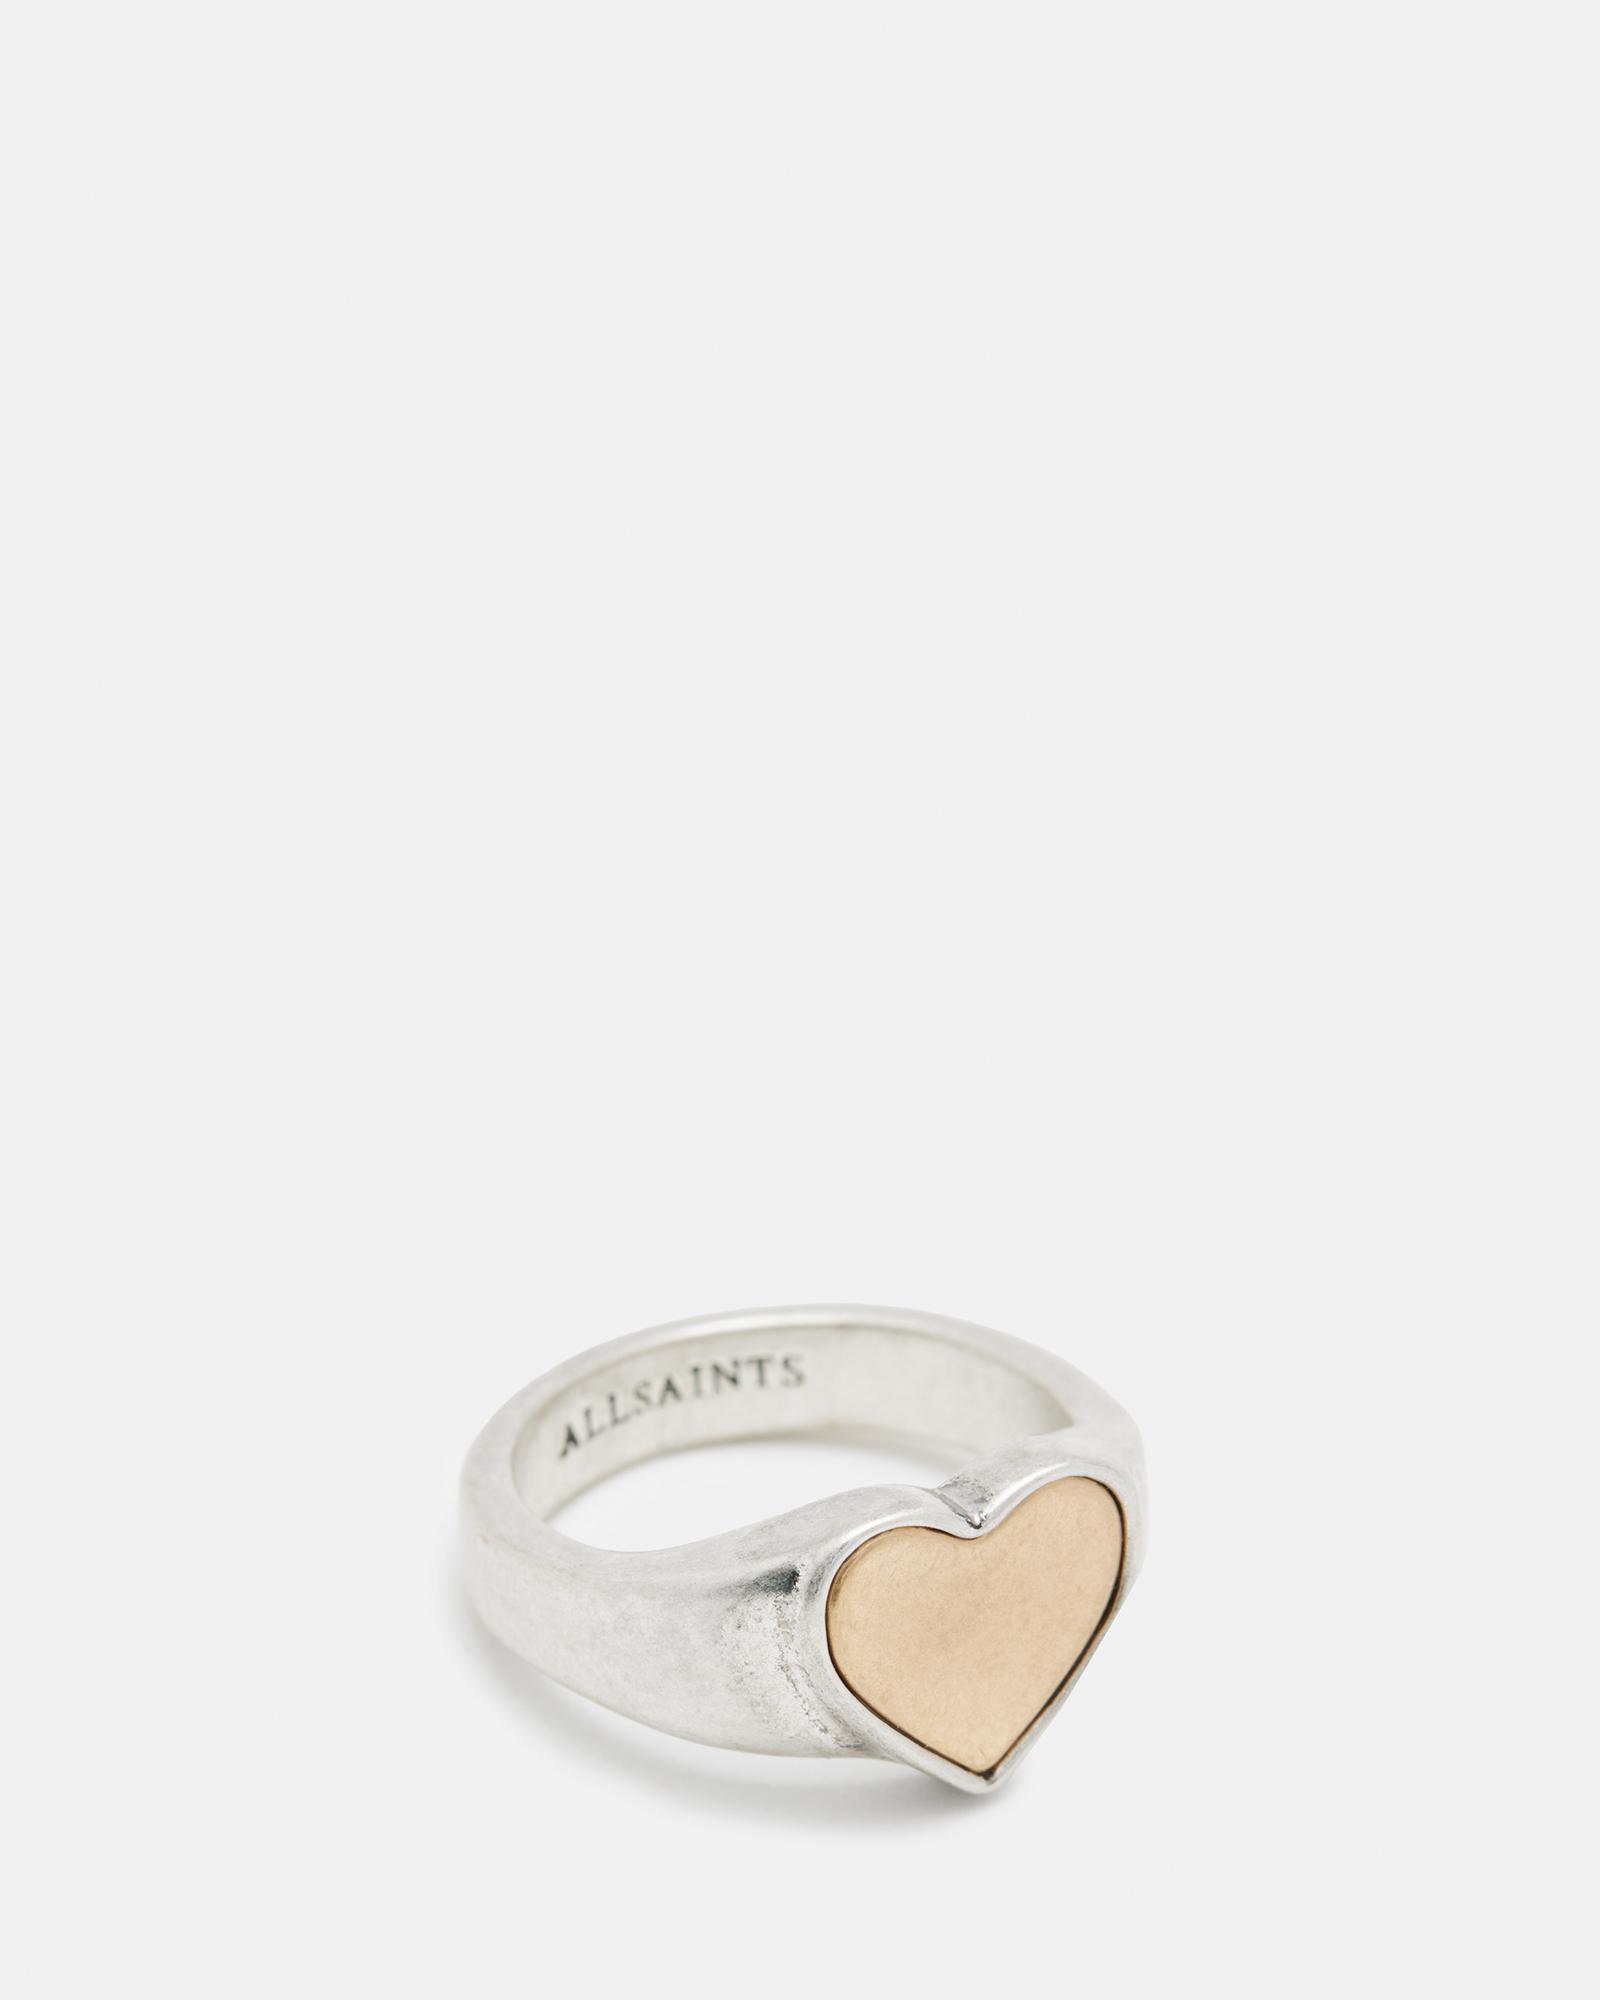 AllSaints Obi 2-In-1 Tone Heart Shaped Ring,, WRM BRAS/WRM SLVER